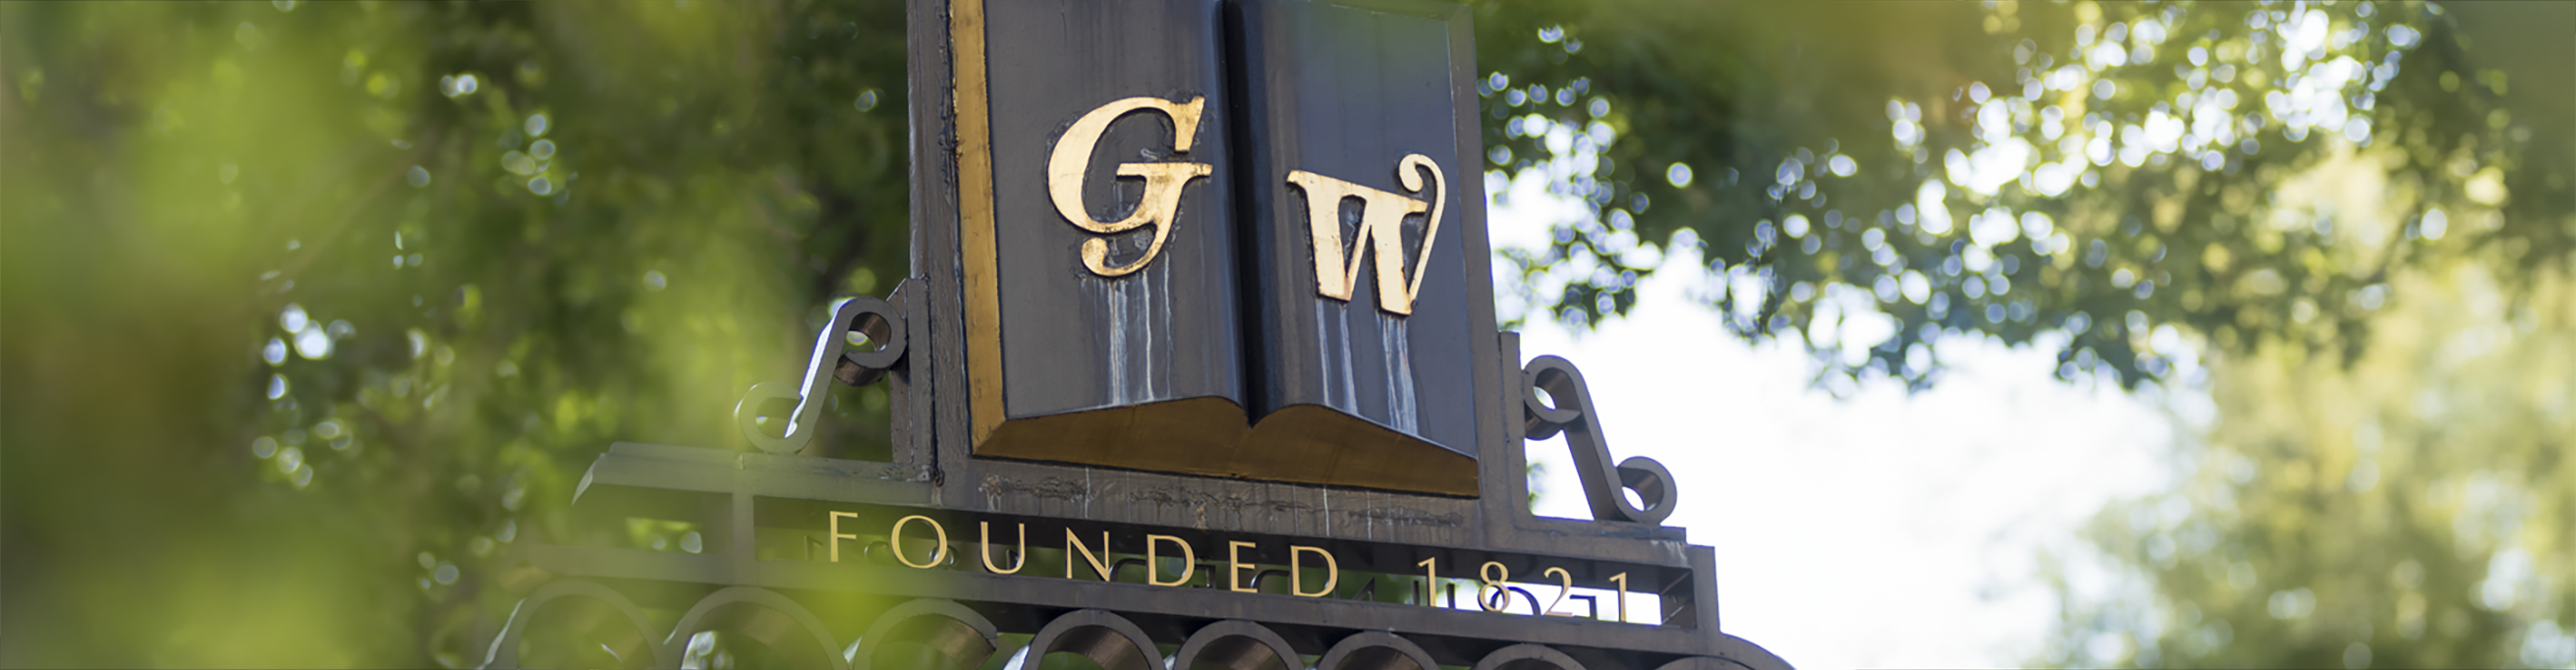 GW Trustees Gate